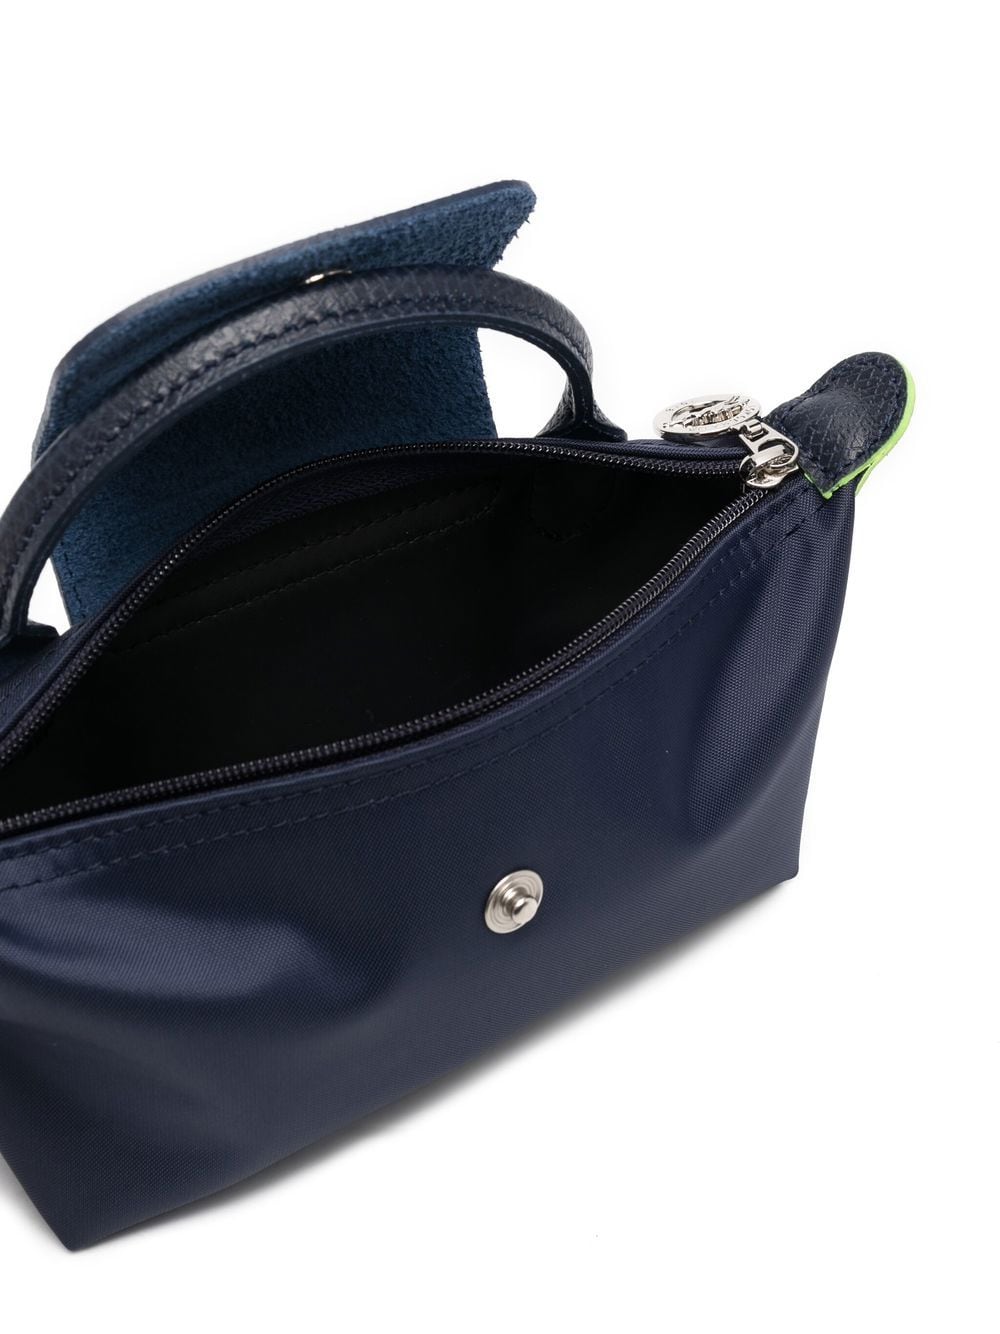 AllRanGe: Longchamp Cosmetic Bag - Le Pliage